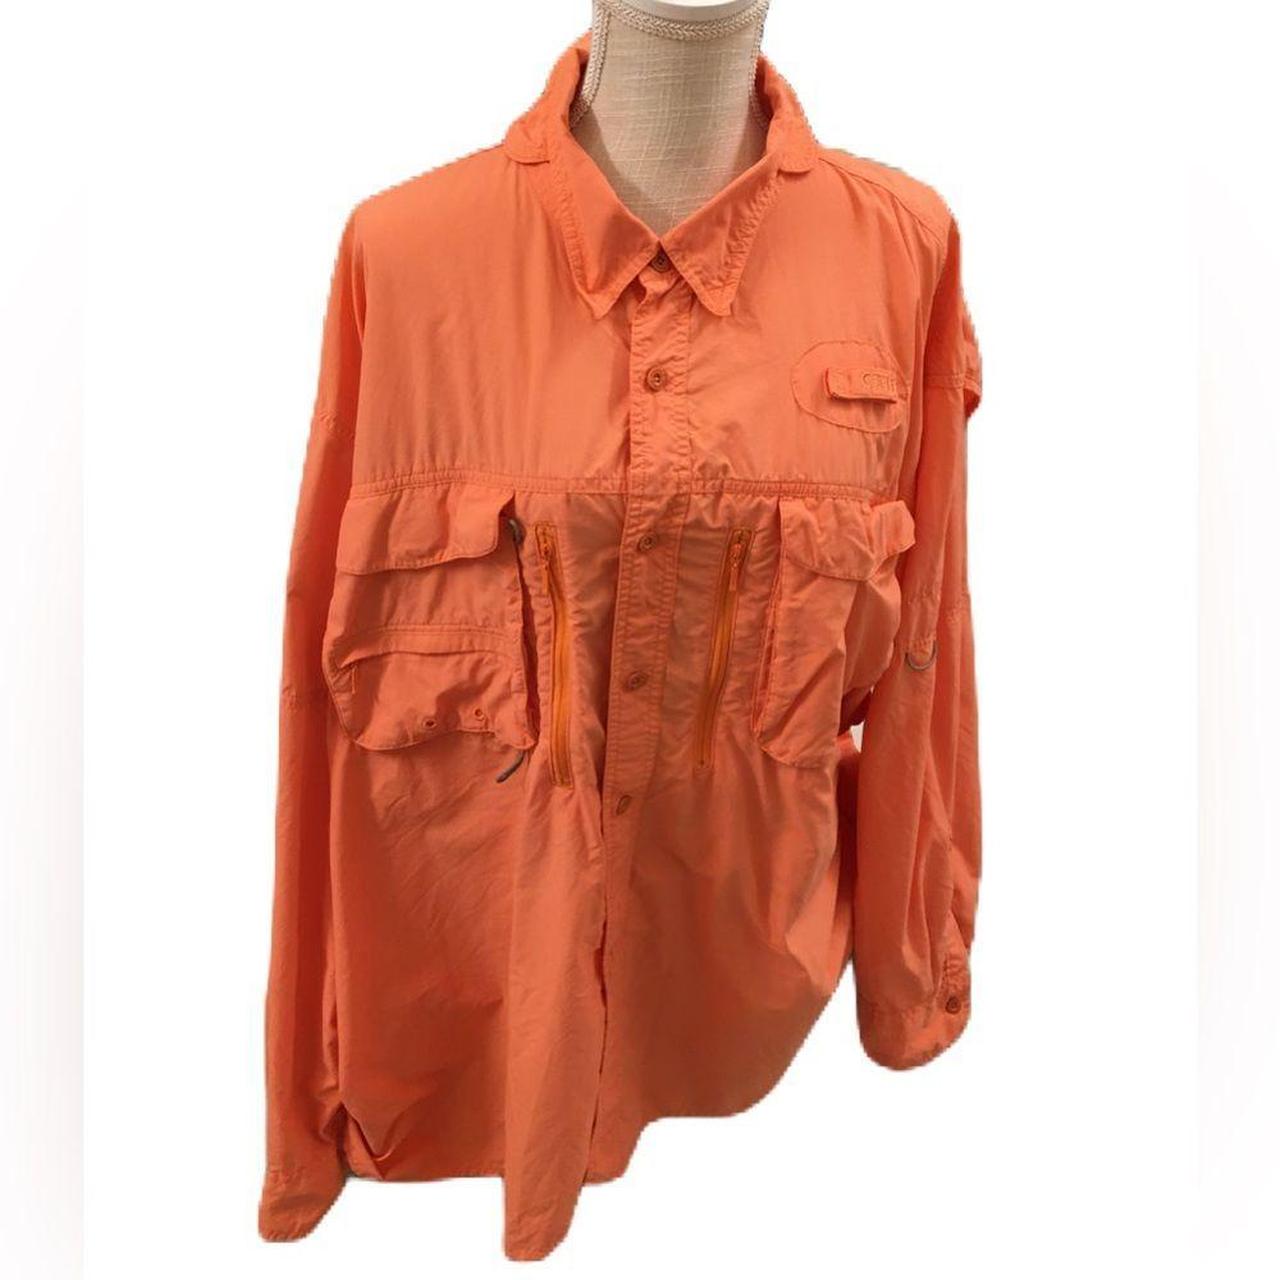 Magellan Men's Fishing Shirt 3XL Orange Angler Fit